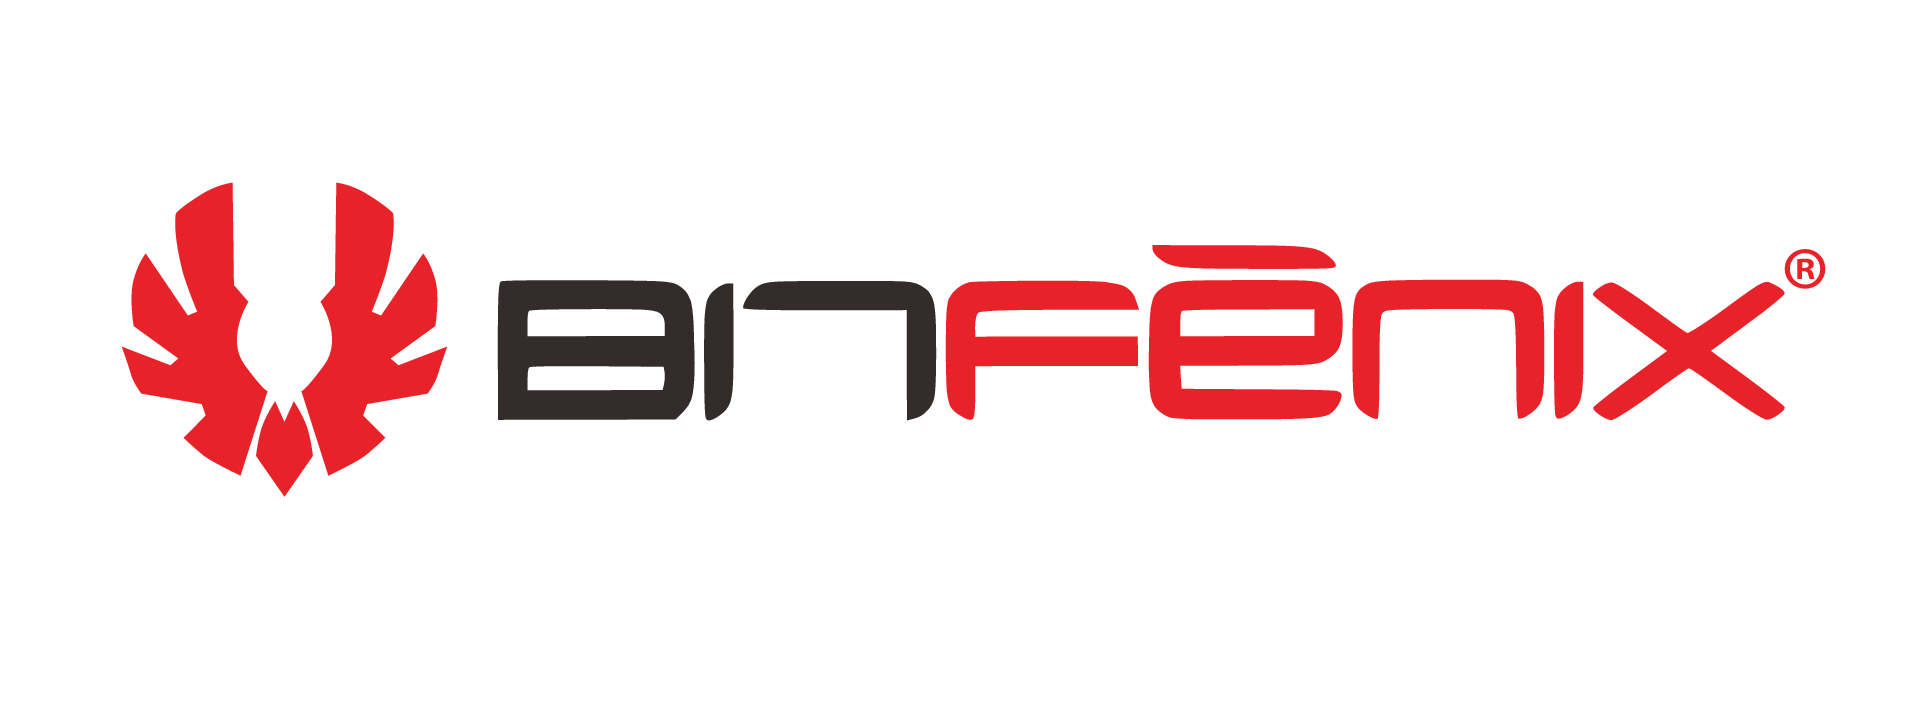 BitFenix Logo photo - 1